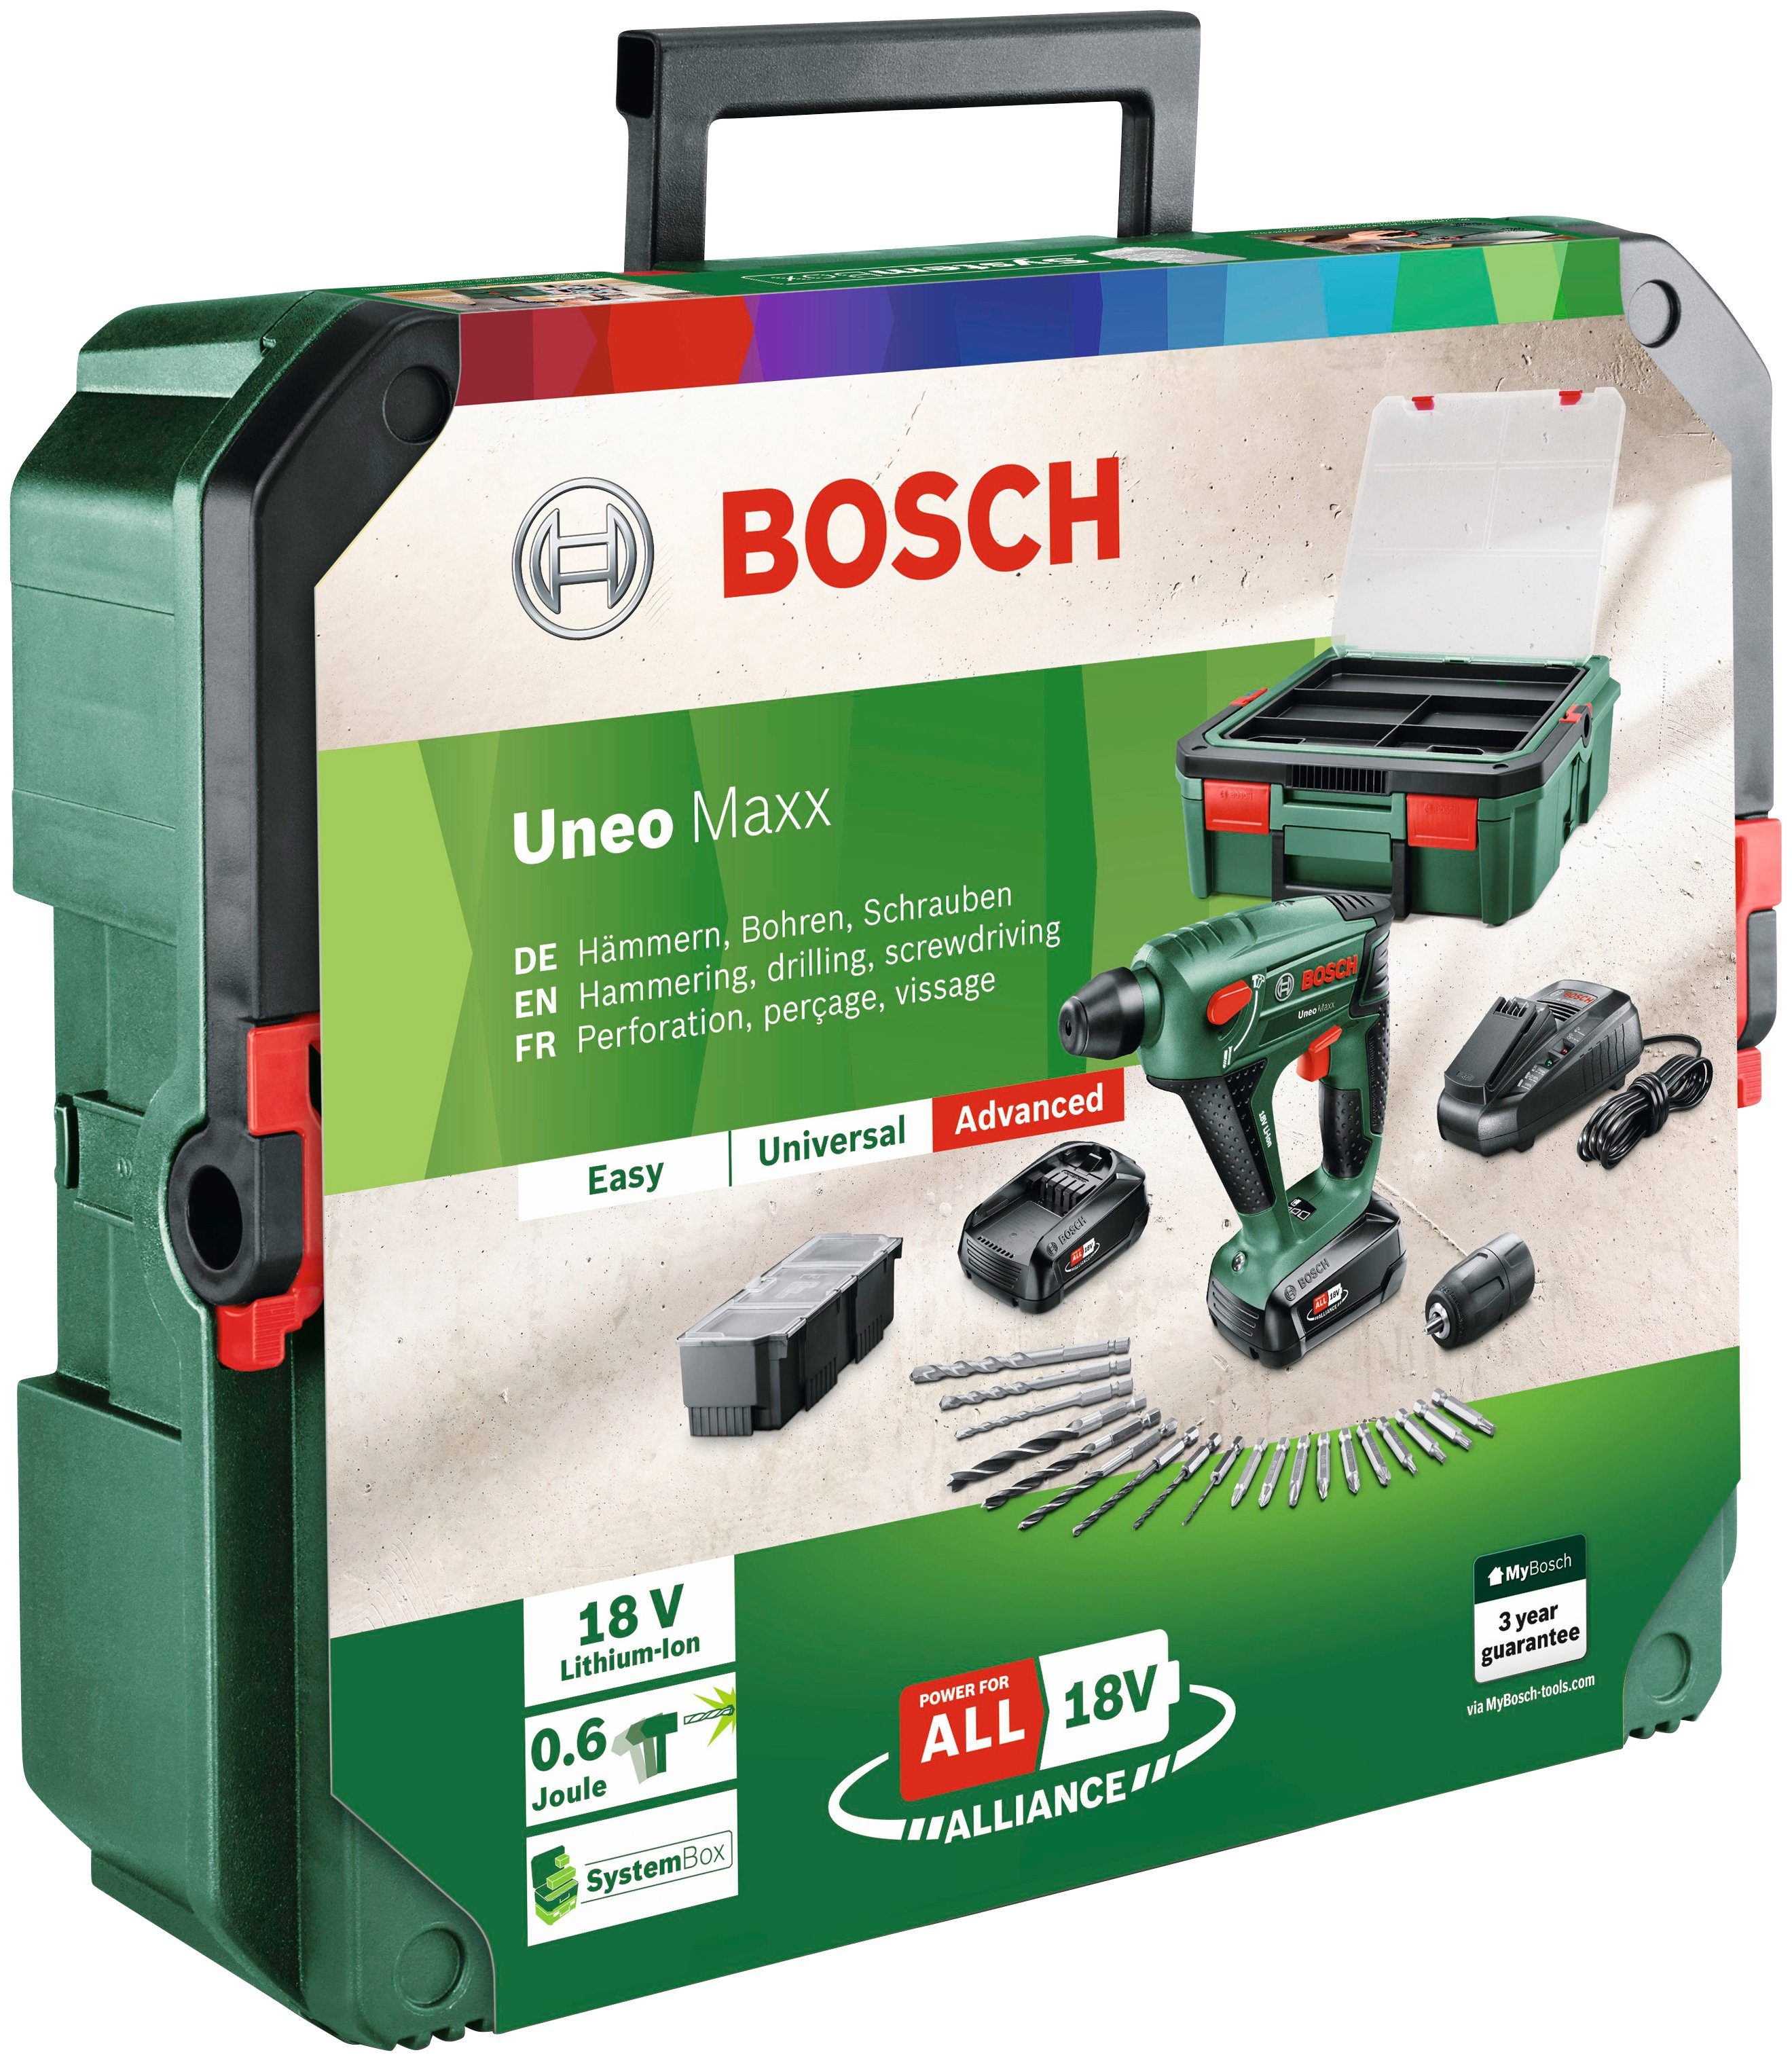 Bosch Home Garden Maxx Akkus Ladegerät + & Uneo mit 2 SystemBox, und Akku-Bohrhammer